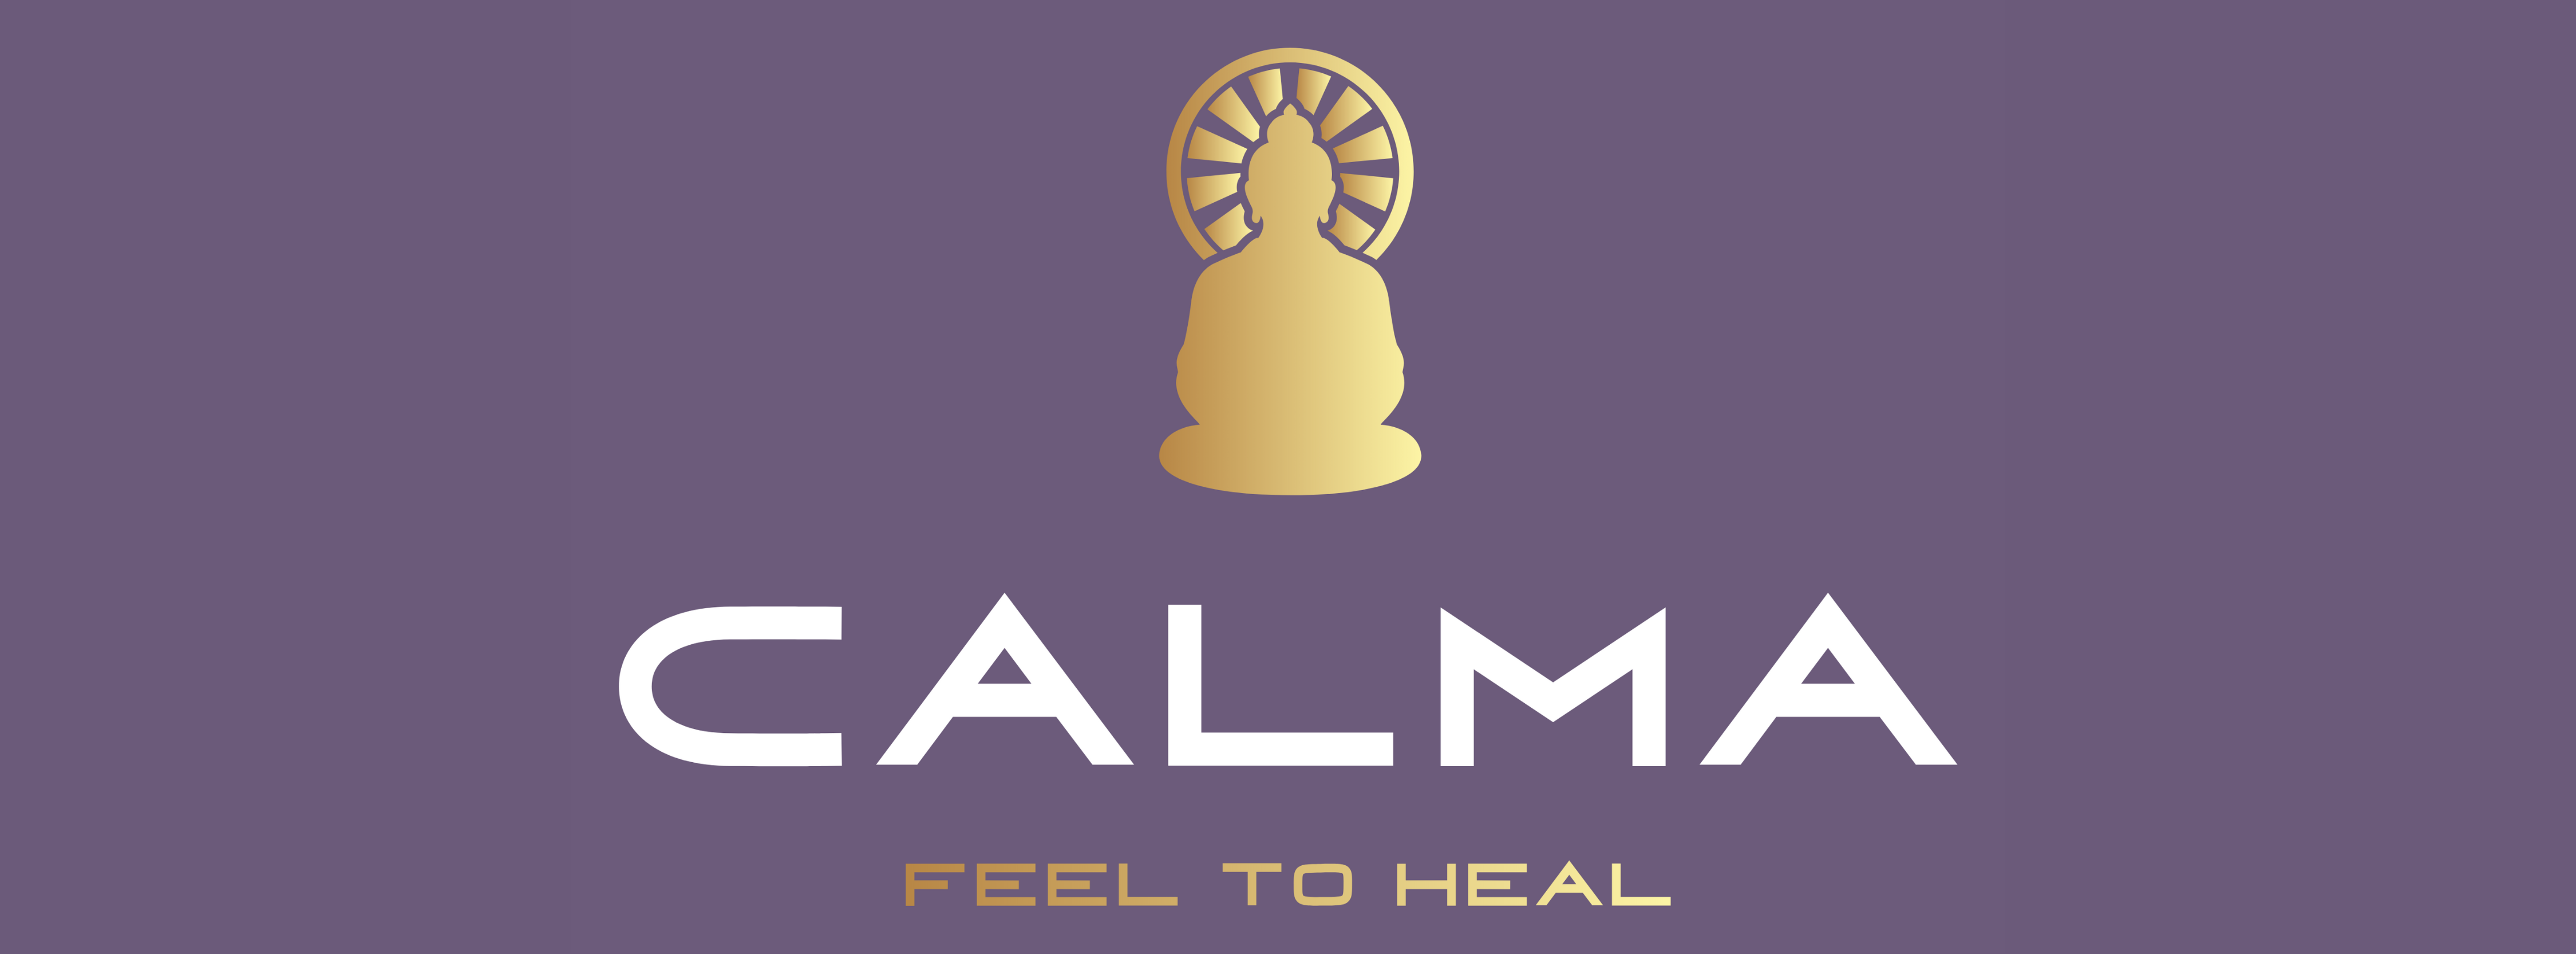 Banner_Wellness_Calma